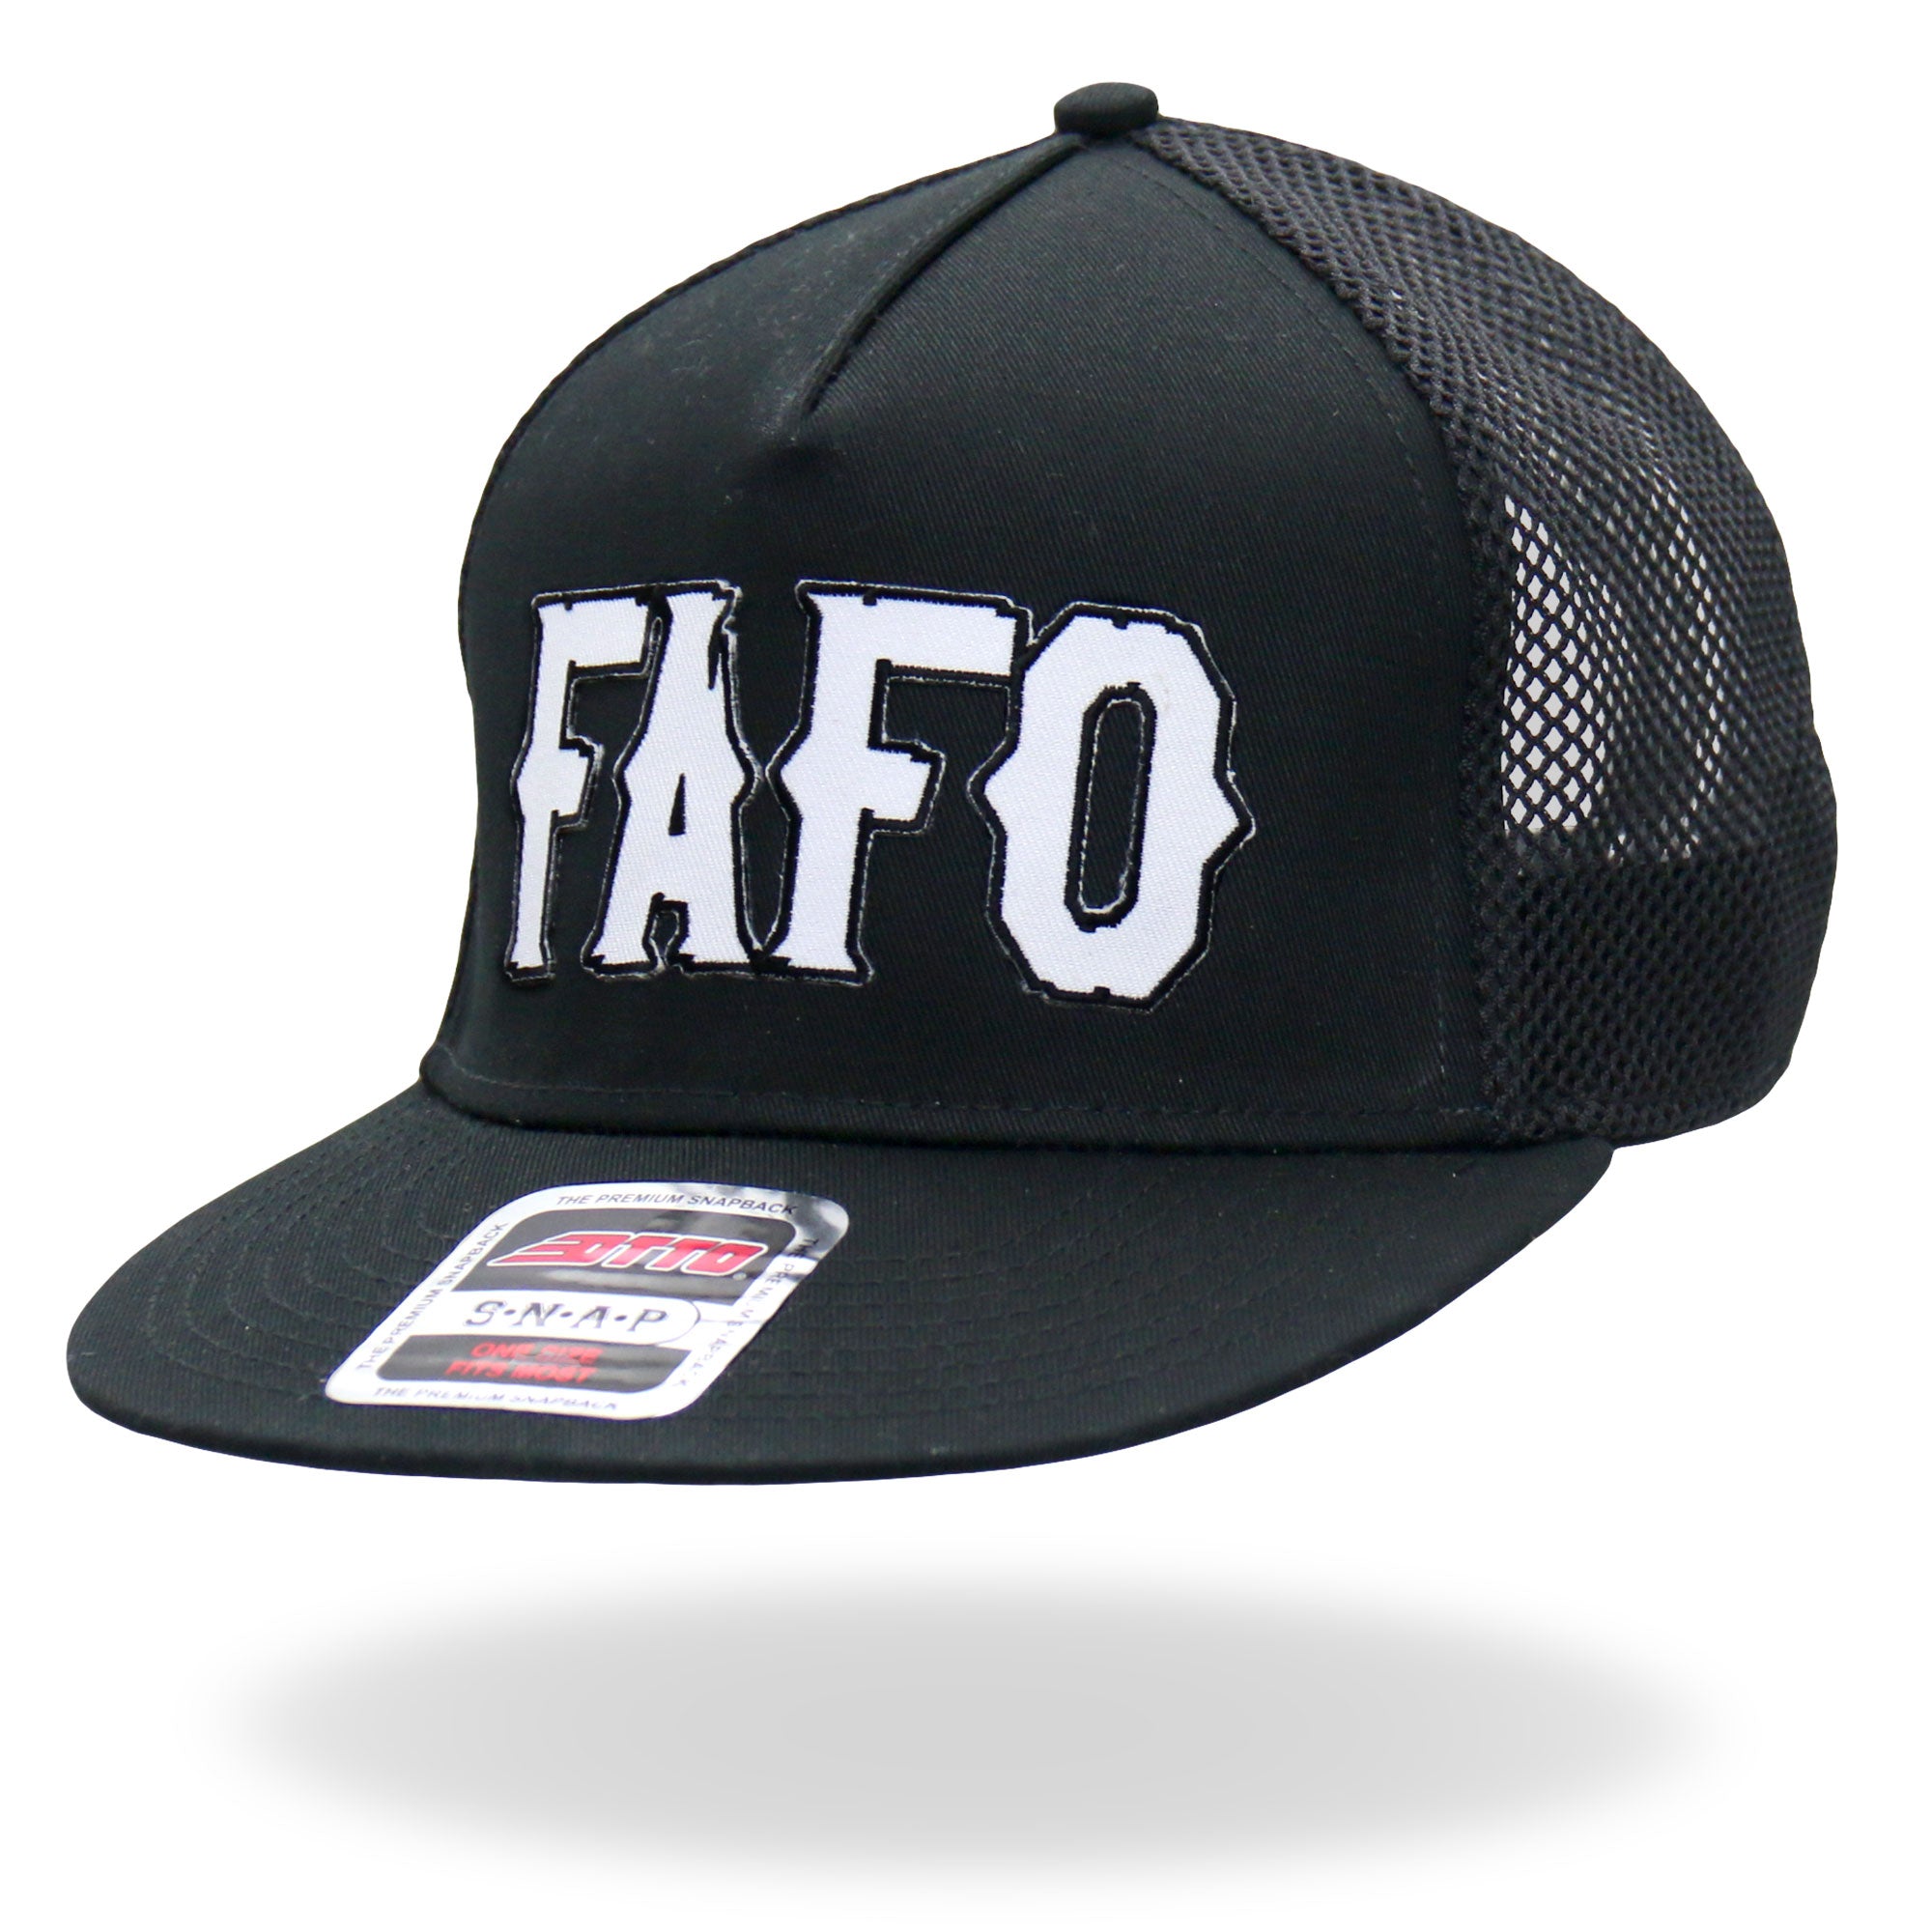 FAFO Patch Snapback